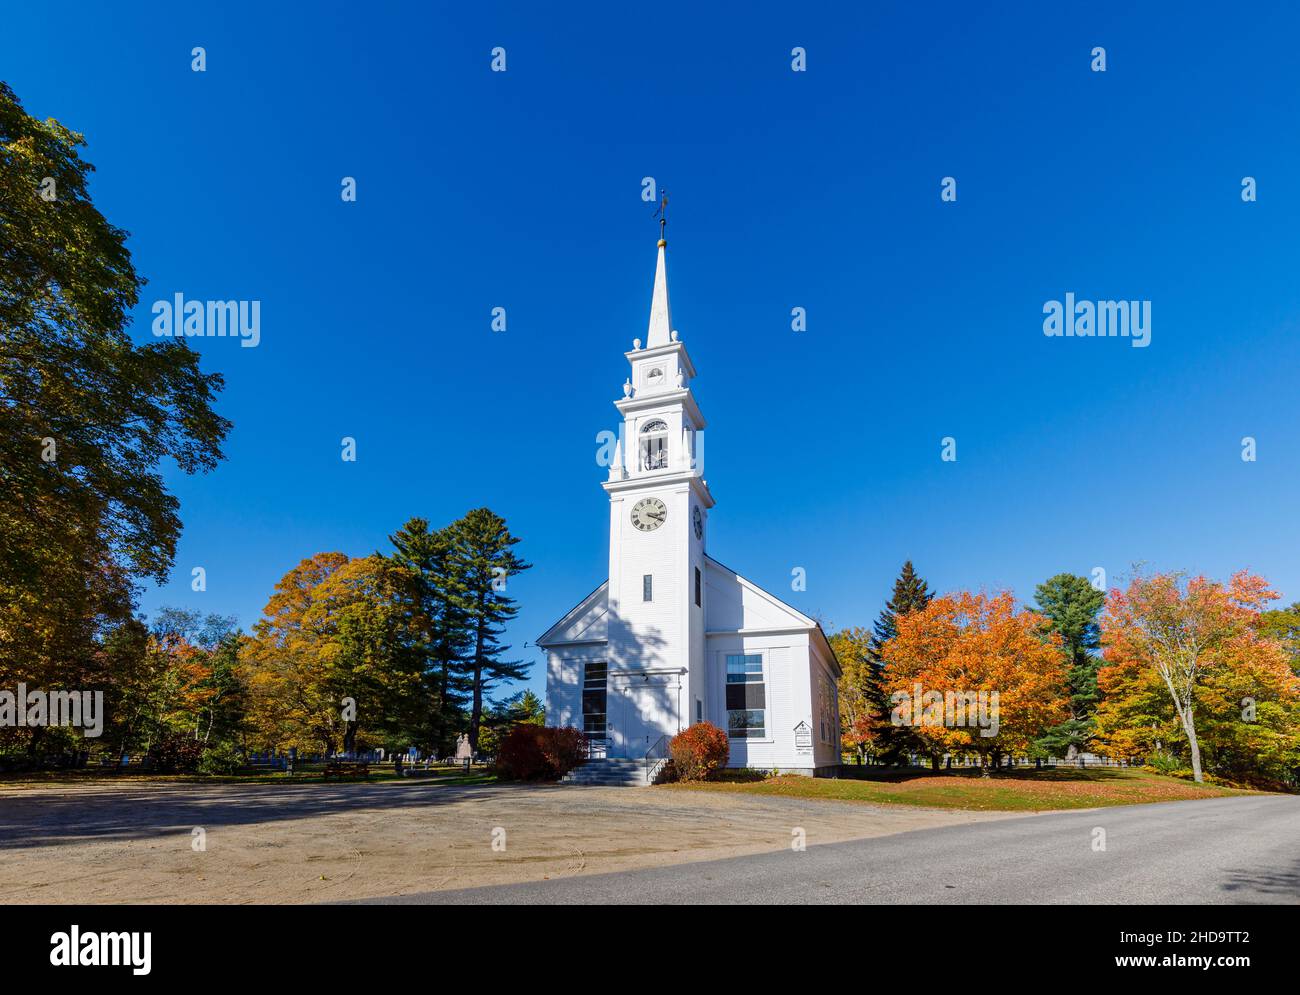 Le style de la renaissance grecque Old Meeting House Baptist Church in Center Sandwich, un village dans le New Hampshire, la Nouvelle-Angleterre, les États-Unis en automne / couleurs d'automne Banque D'Images